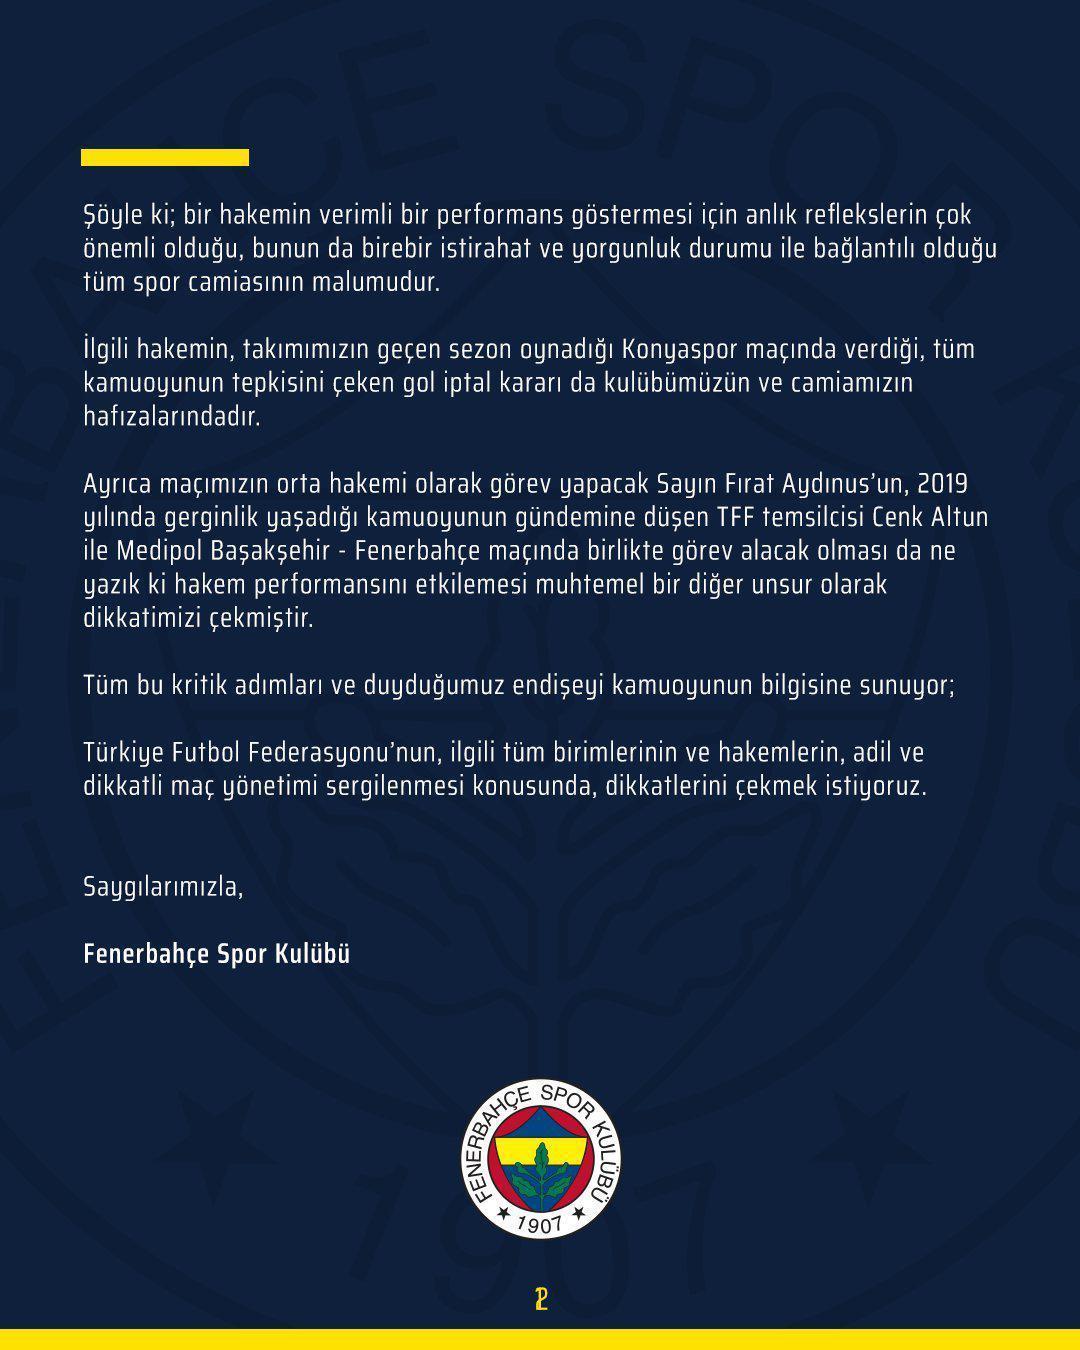 Son dakika | Fenerbahçeden Ali Şansalan açıklaması